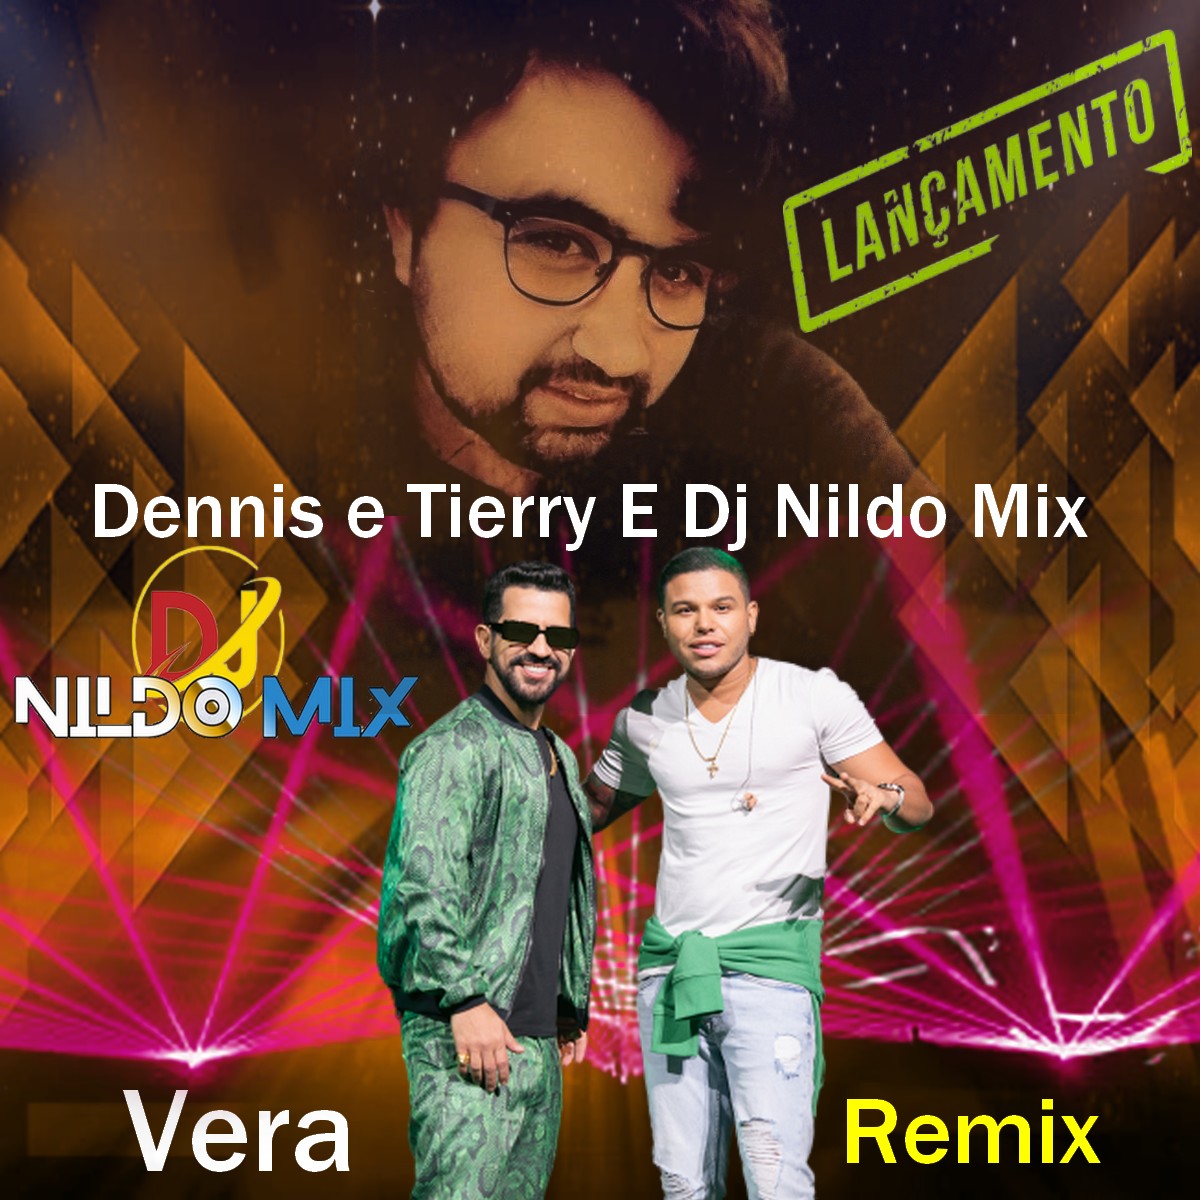 Dennis e Tierry E Dj Nildo Mix - Vera Remix 2022